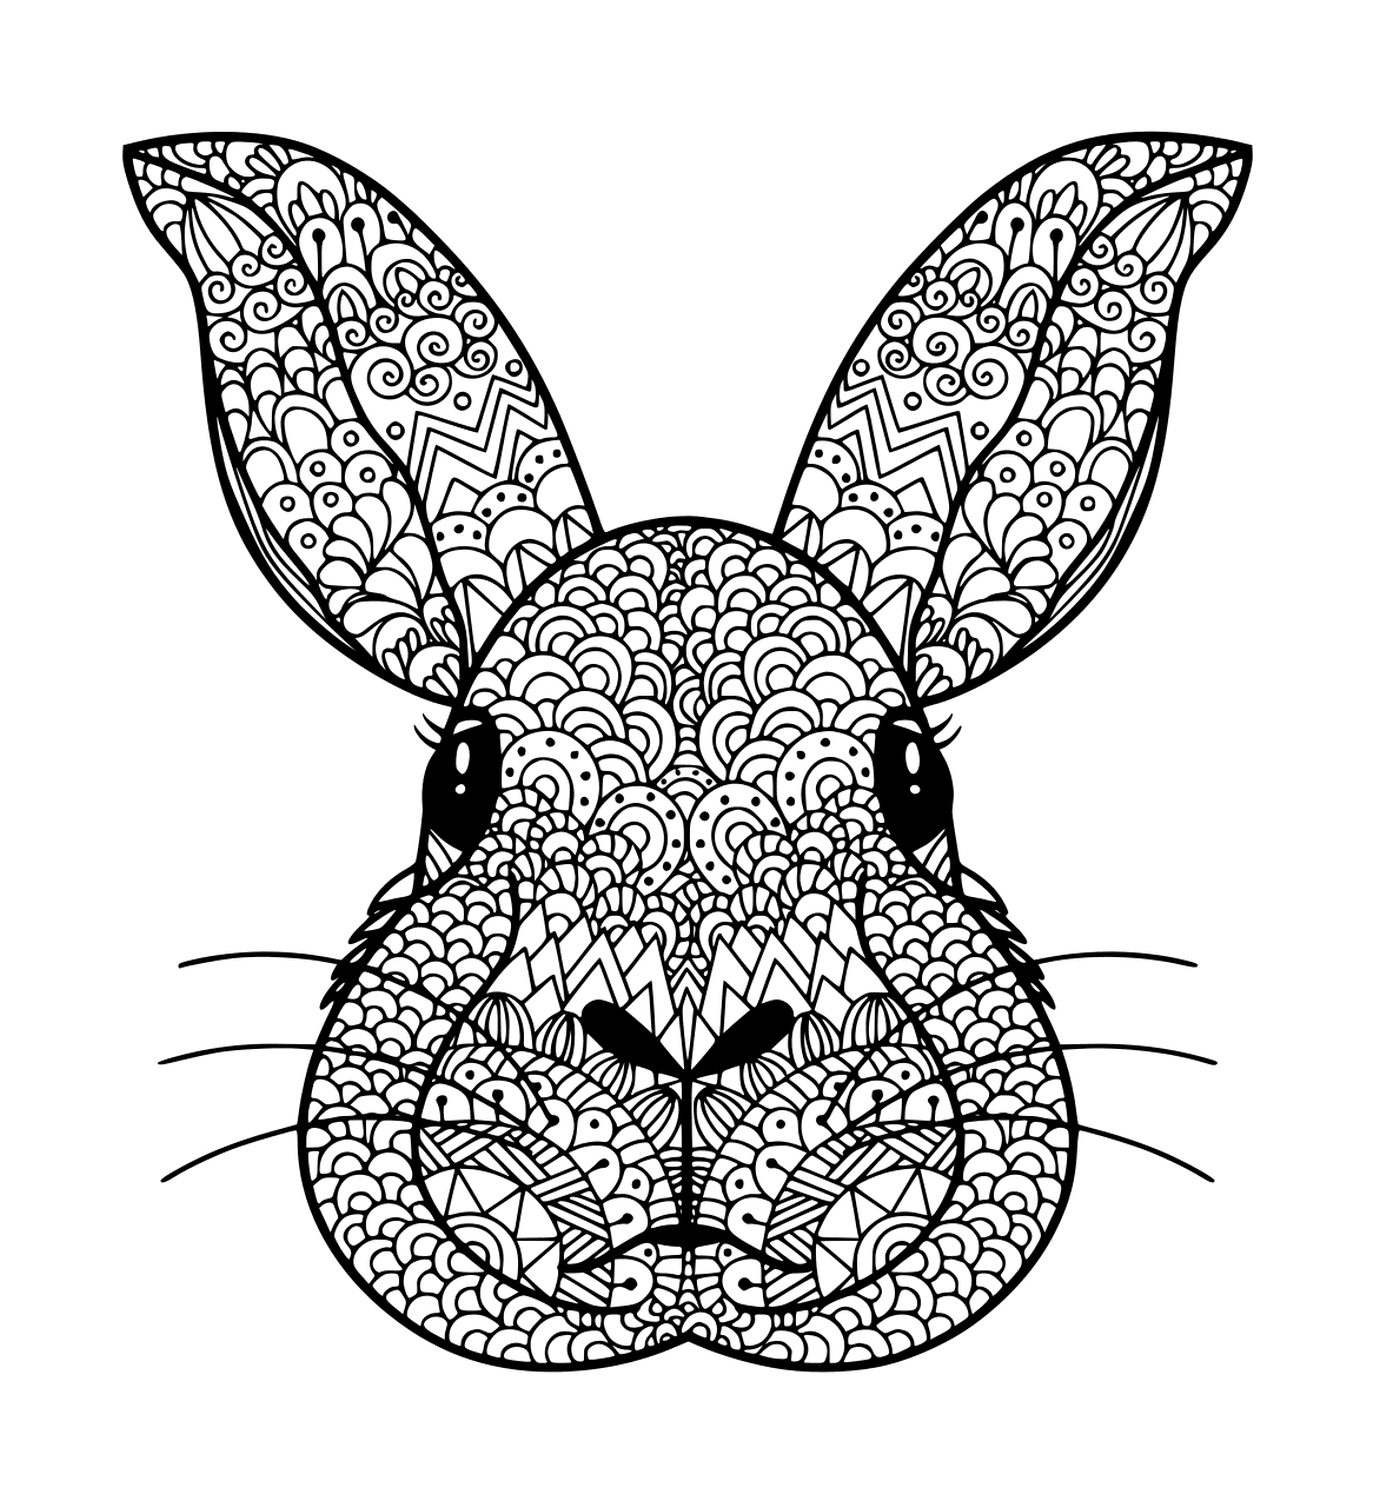  Cabeça de coelho colorido 